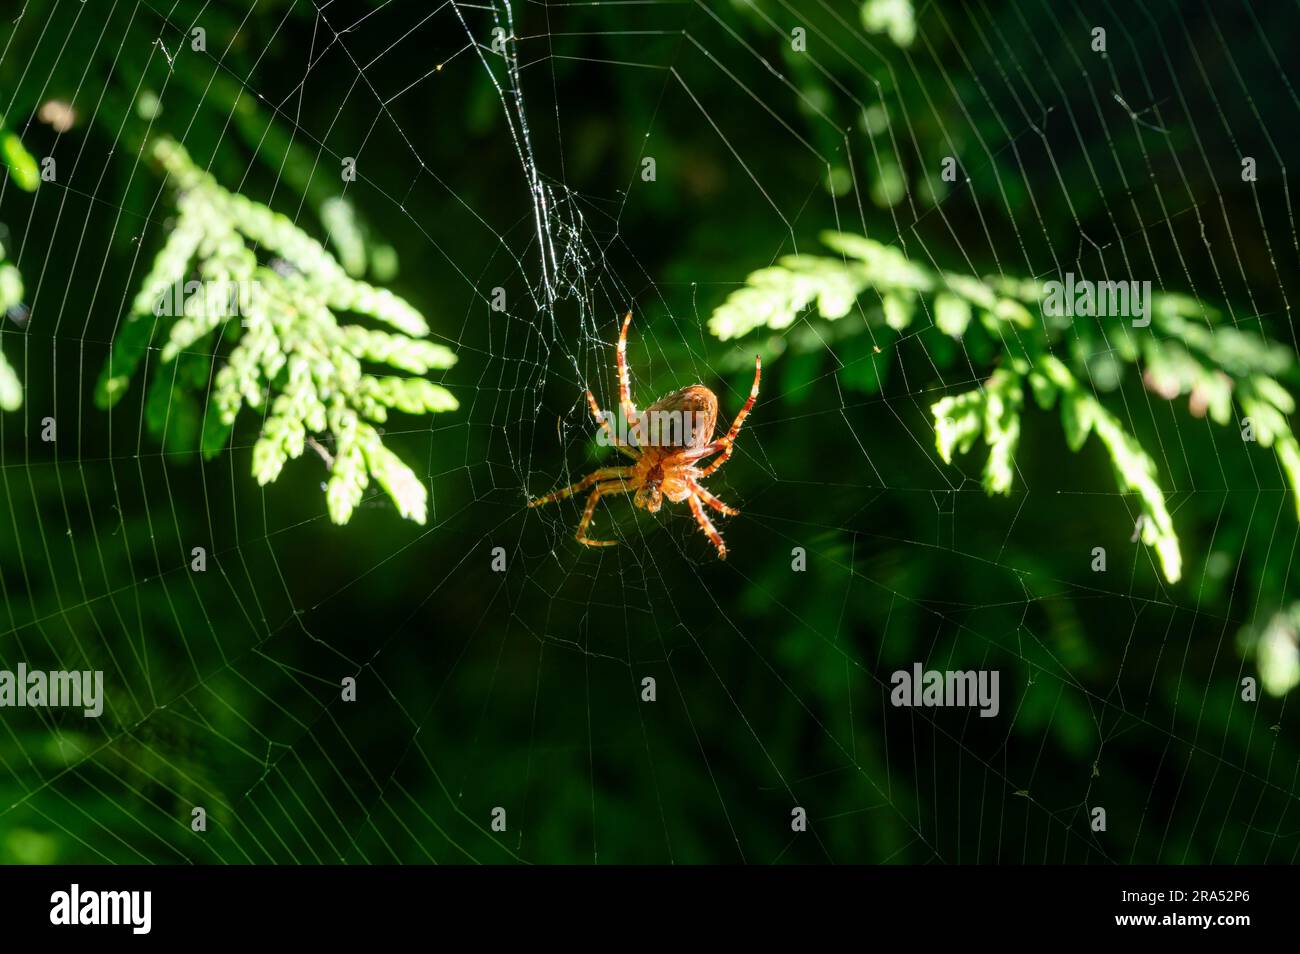 Araignée de jardin européenne dans son orbe avec les glandes spinneret clairement visibles Banque D'Images